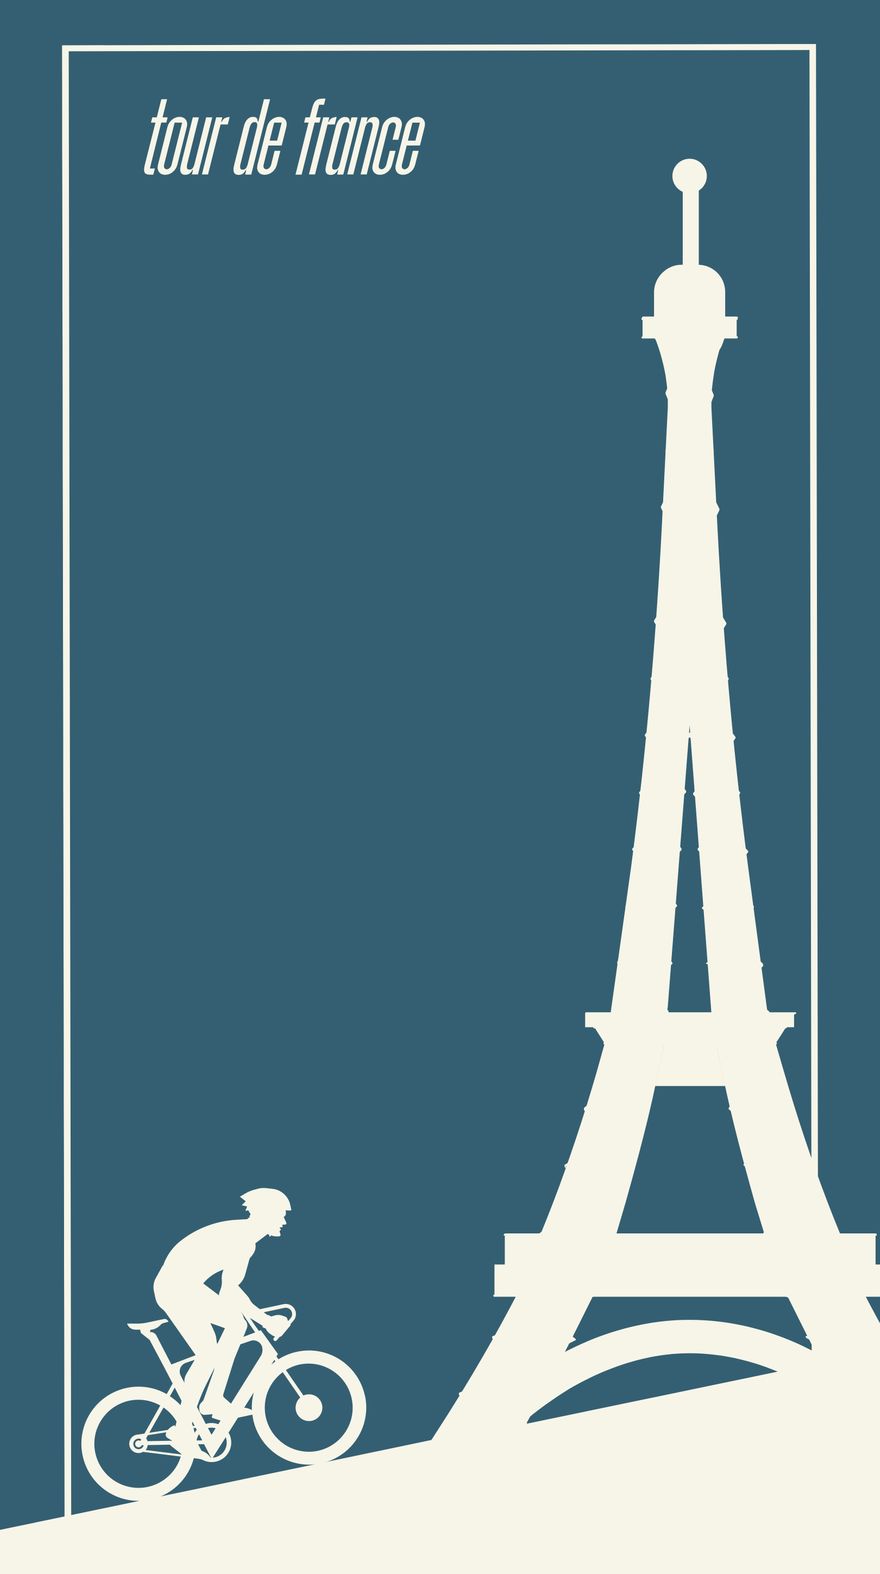 Tour de France iPhone Background in PDF, Illustrator, PSD, EPS, SVG, PNG, JPEG